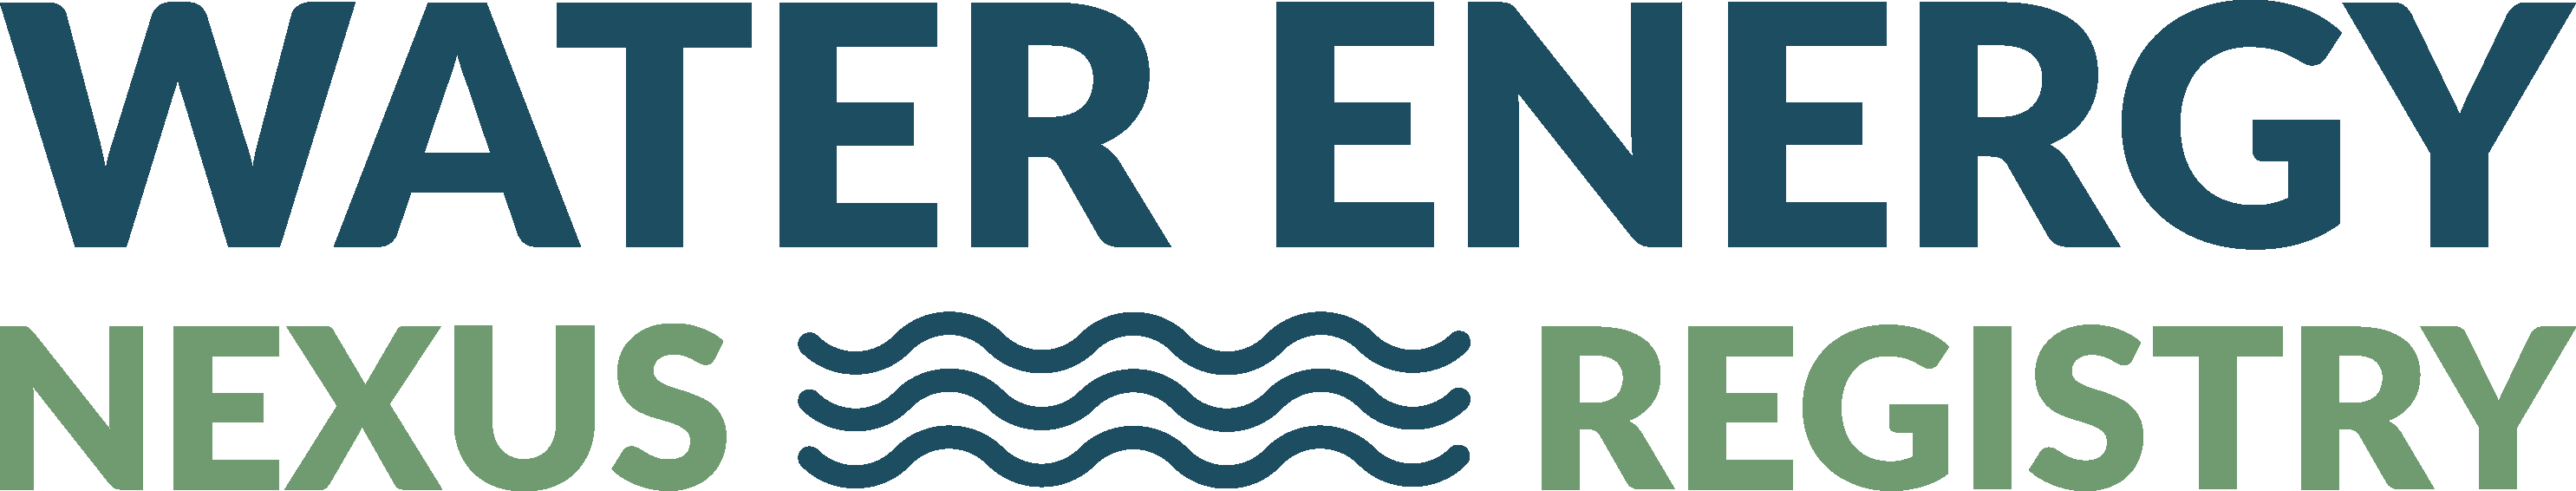 Water Energy Nexus Registry